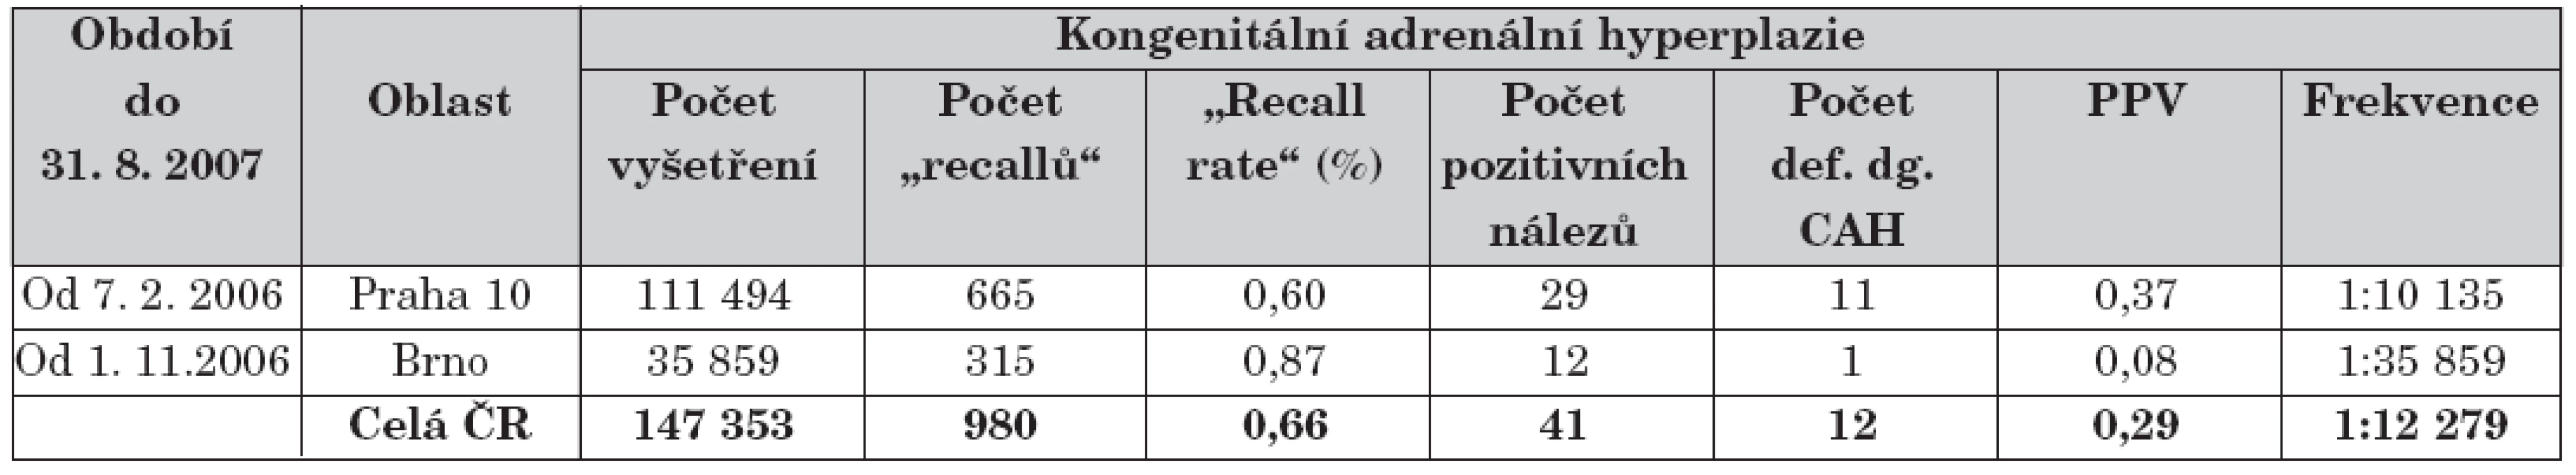 Přehled průběžných výsledků novorozeneckého screeningu kongenitální adrenální hyperplazie
od jeho celoplošného zahájení v roce 2006.